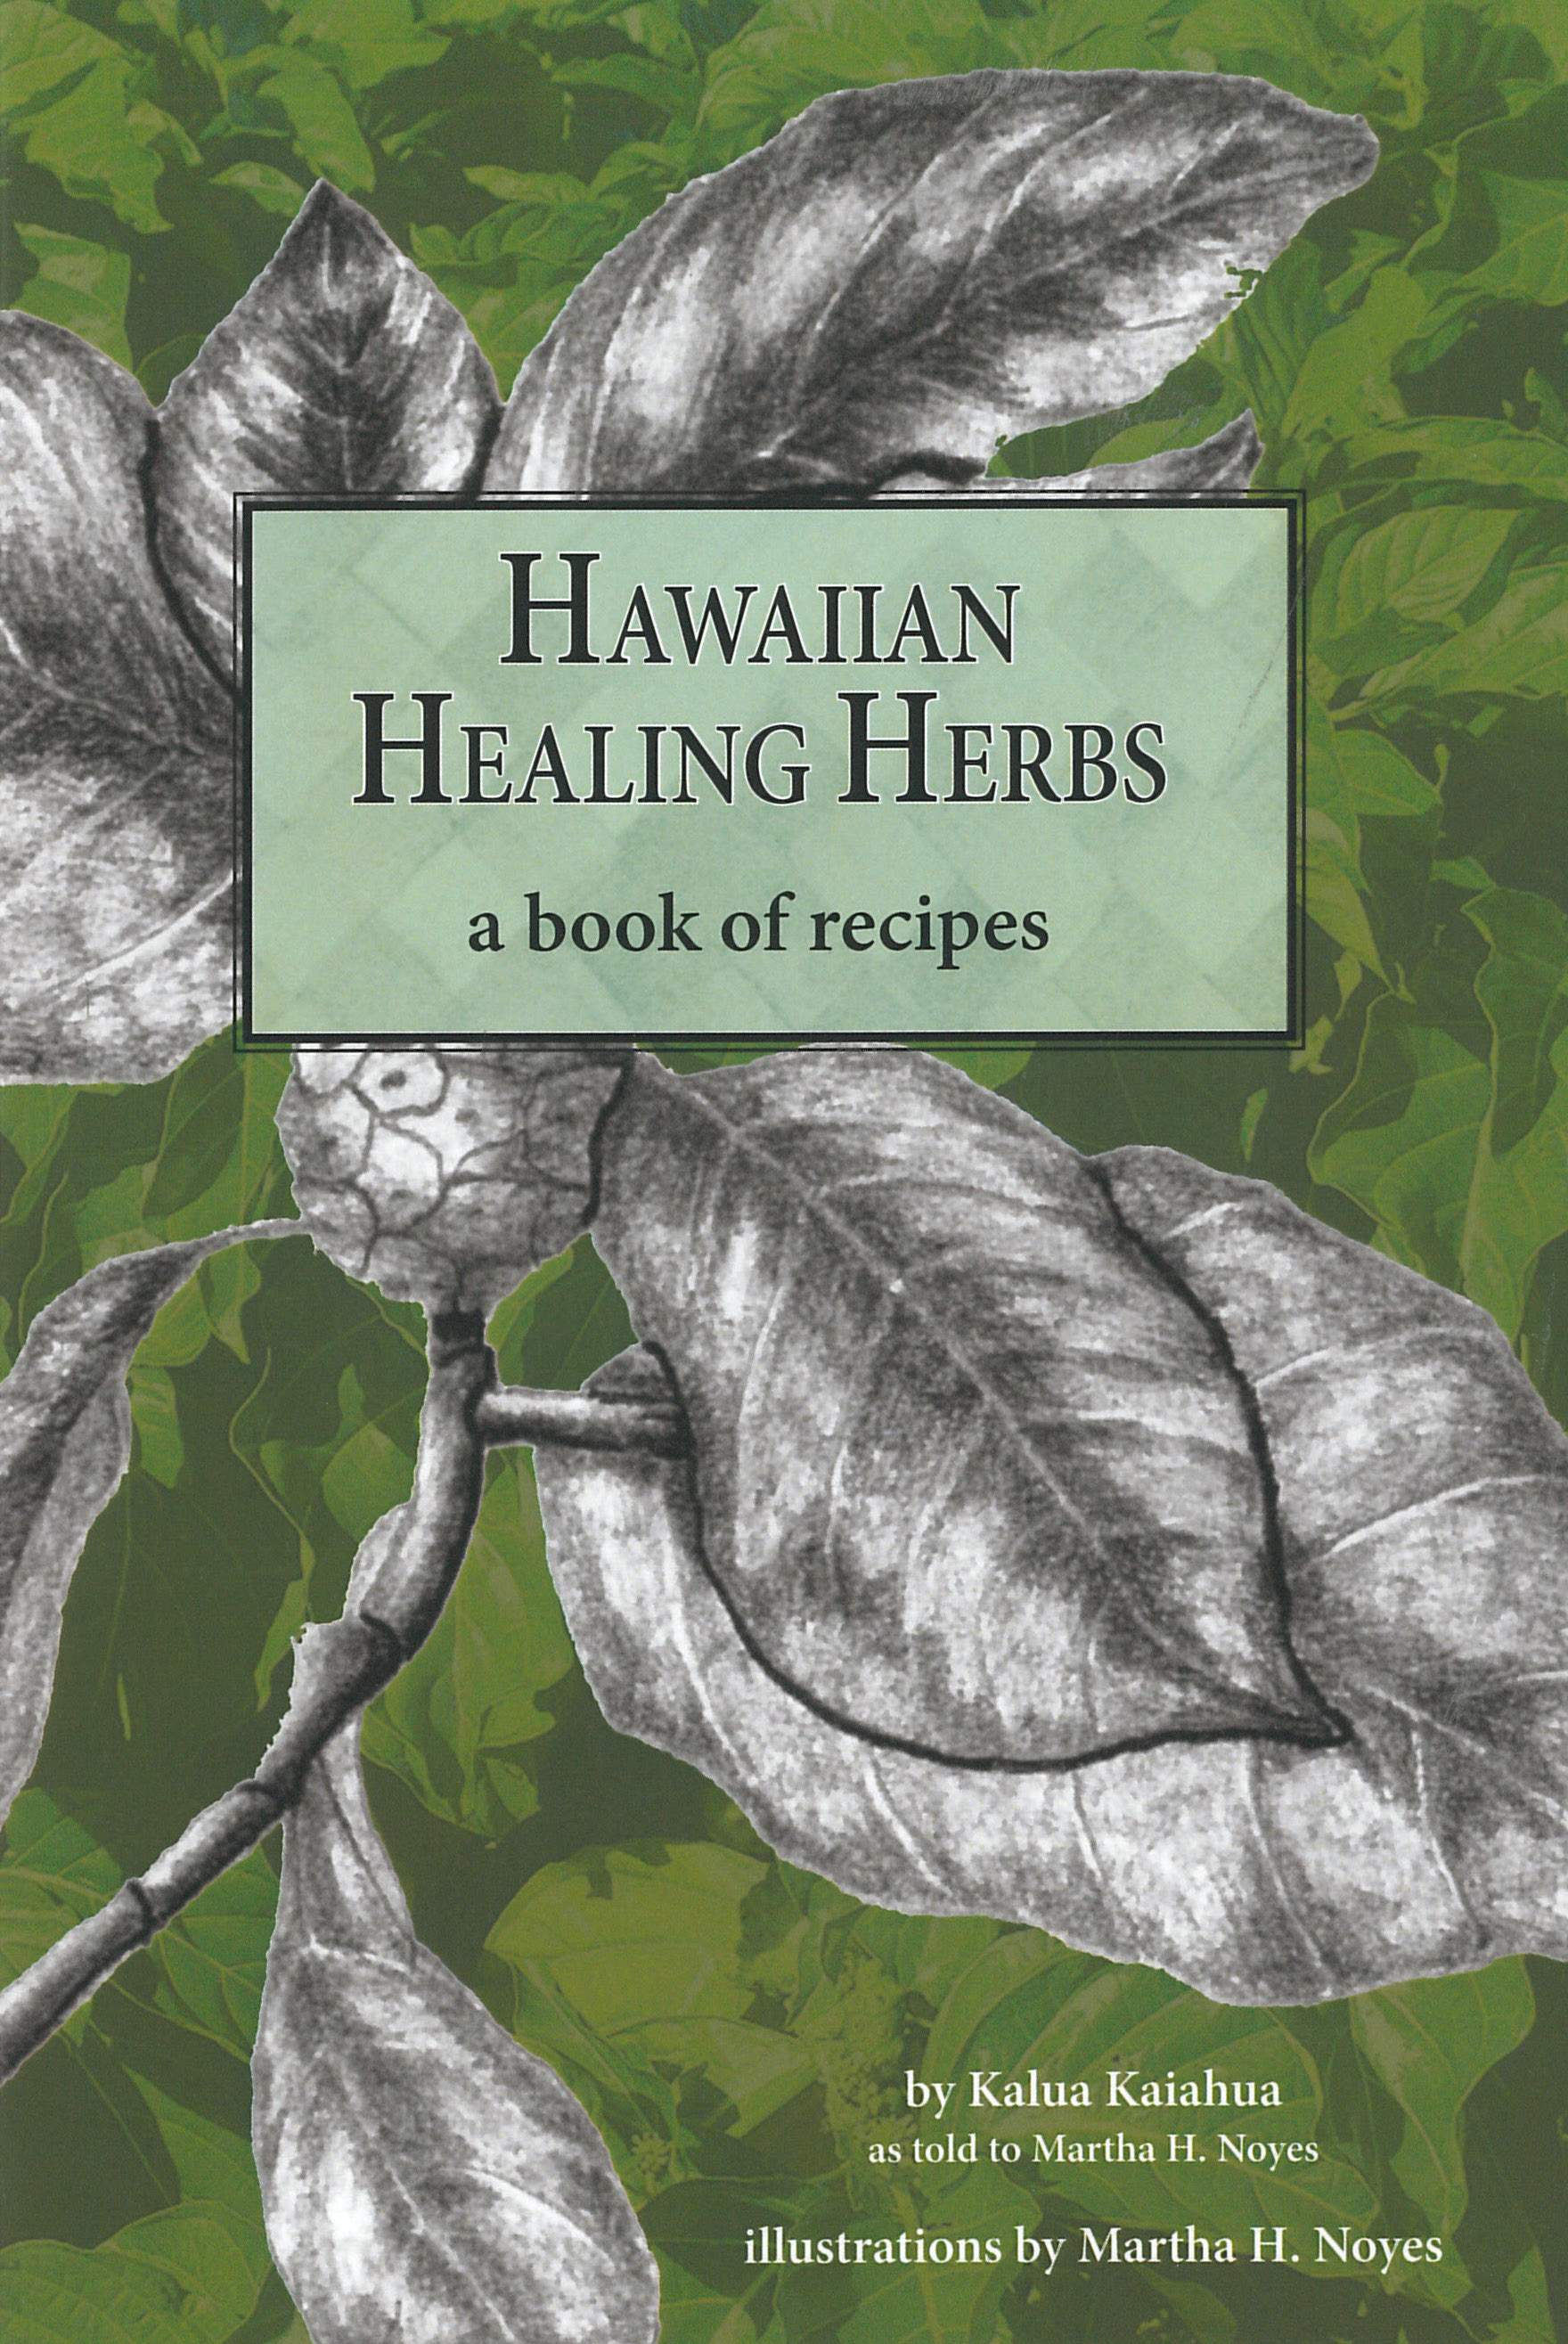 Hawaiian Healing Herbs: A Book of Recipes